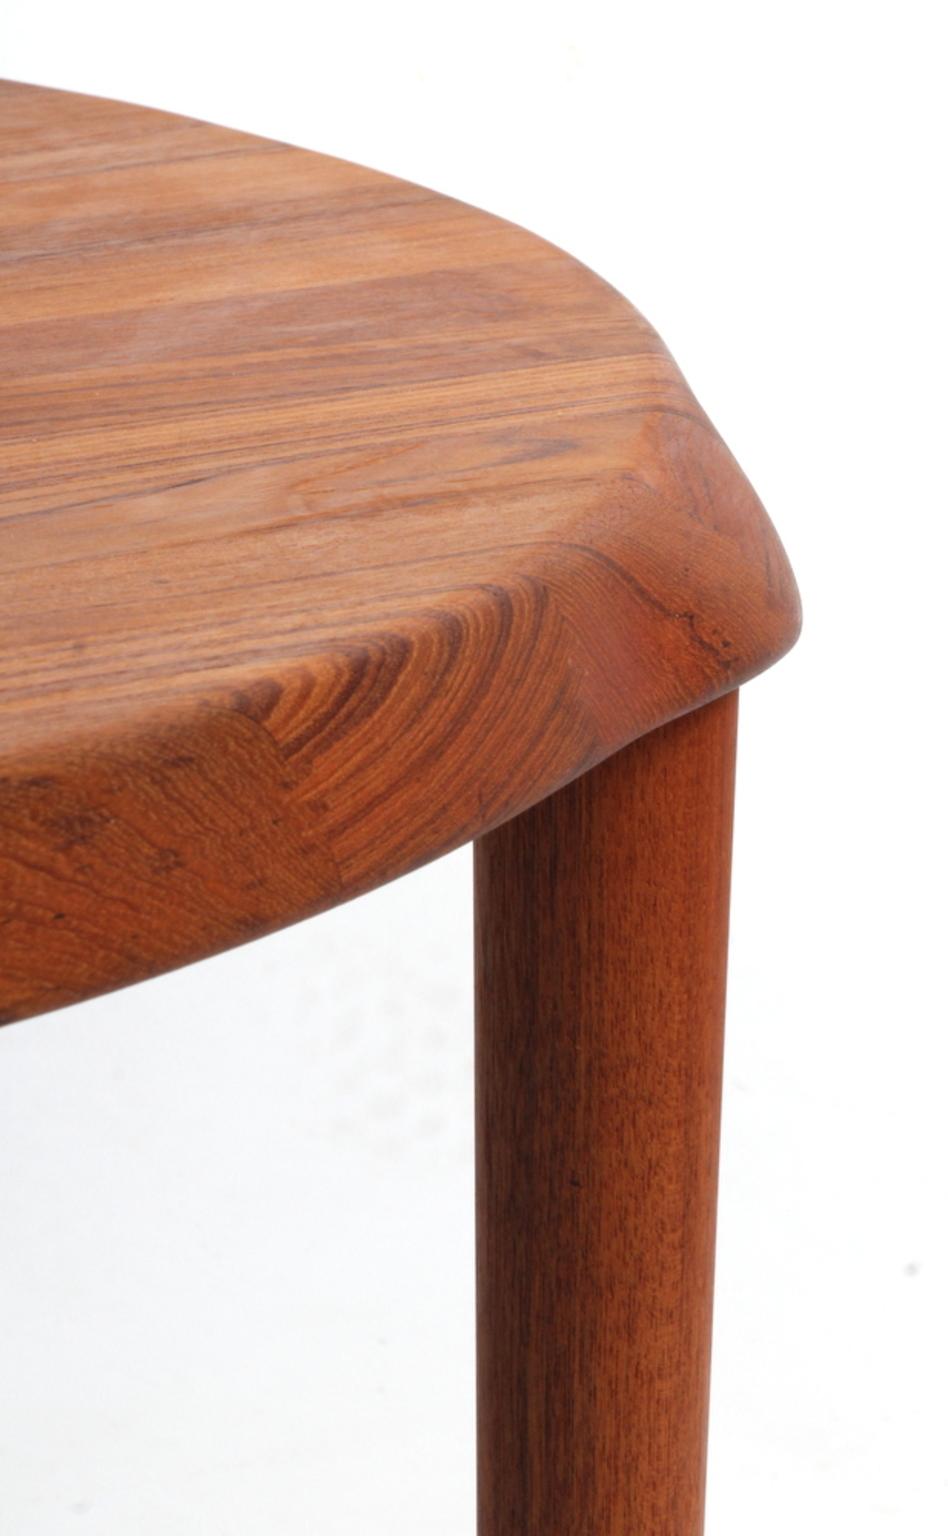 Scandinavian Modern Solid Teak Wood Coffee Table by John Bone for Mikael Laursen, Denmark, 1960s